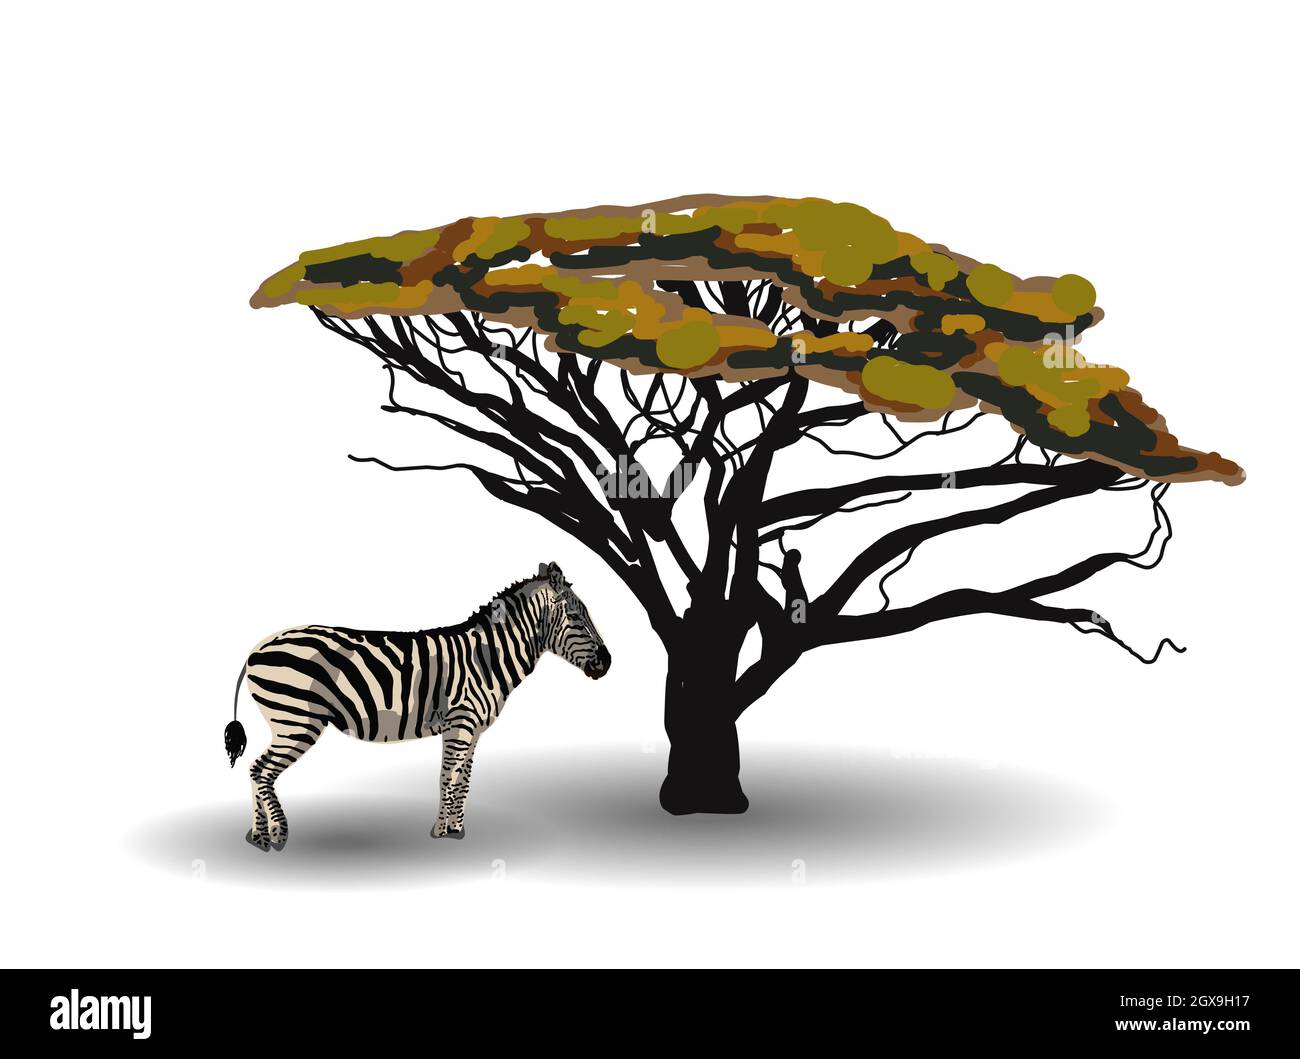 TENDANCE ETHNIQUE. PEINTURE DE STYLE AFRICAIN. zebra dans la savane. Animal africain isolé sur fond blanc. Illustration vectorielle. Banque D'Images